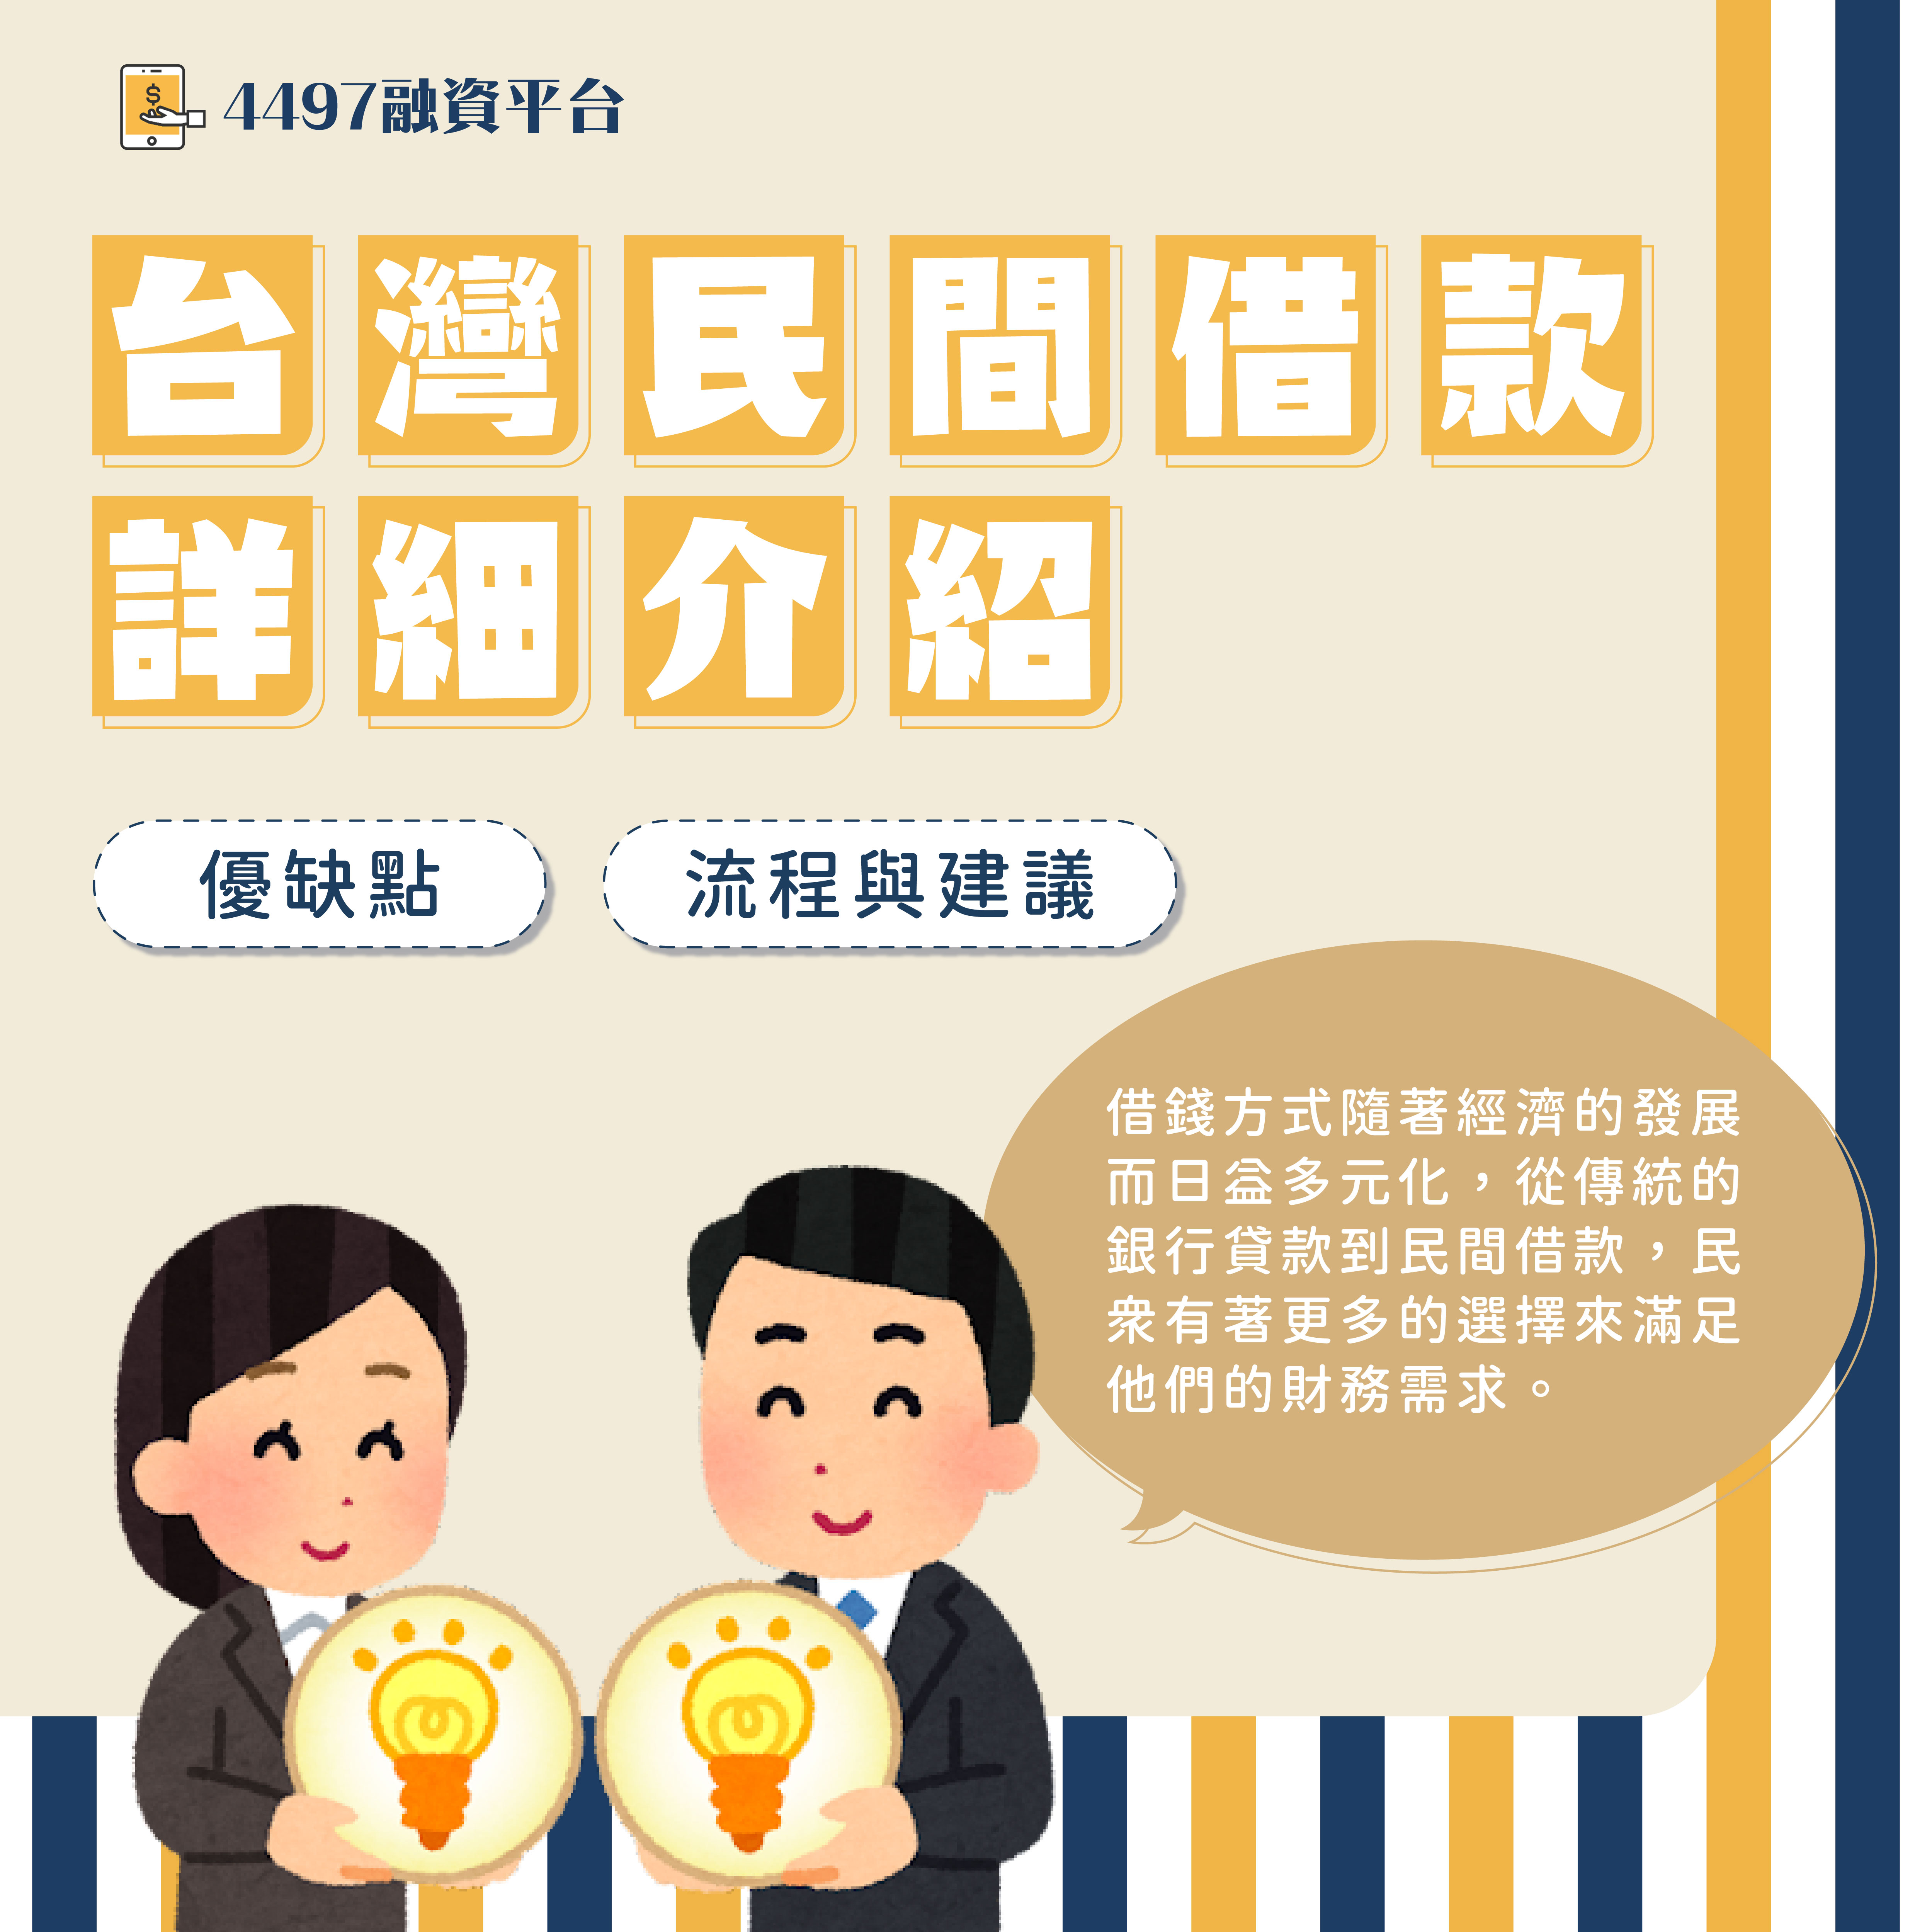 台灣民間借款詳細介紹：優缺點、借款流程與建議｜4497借錢網